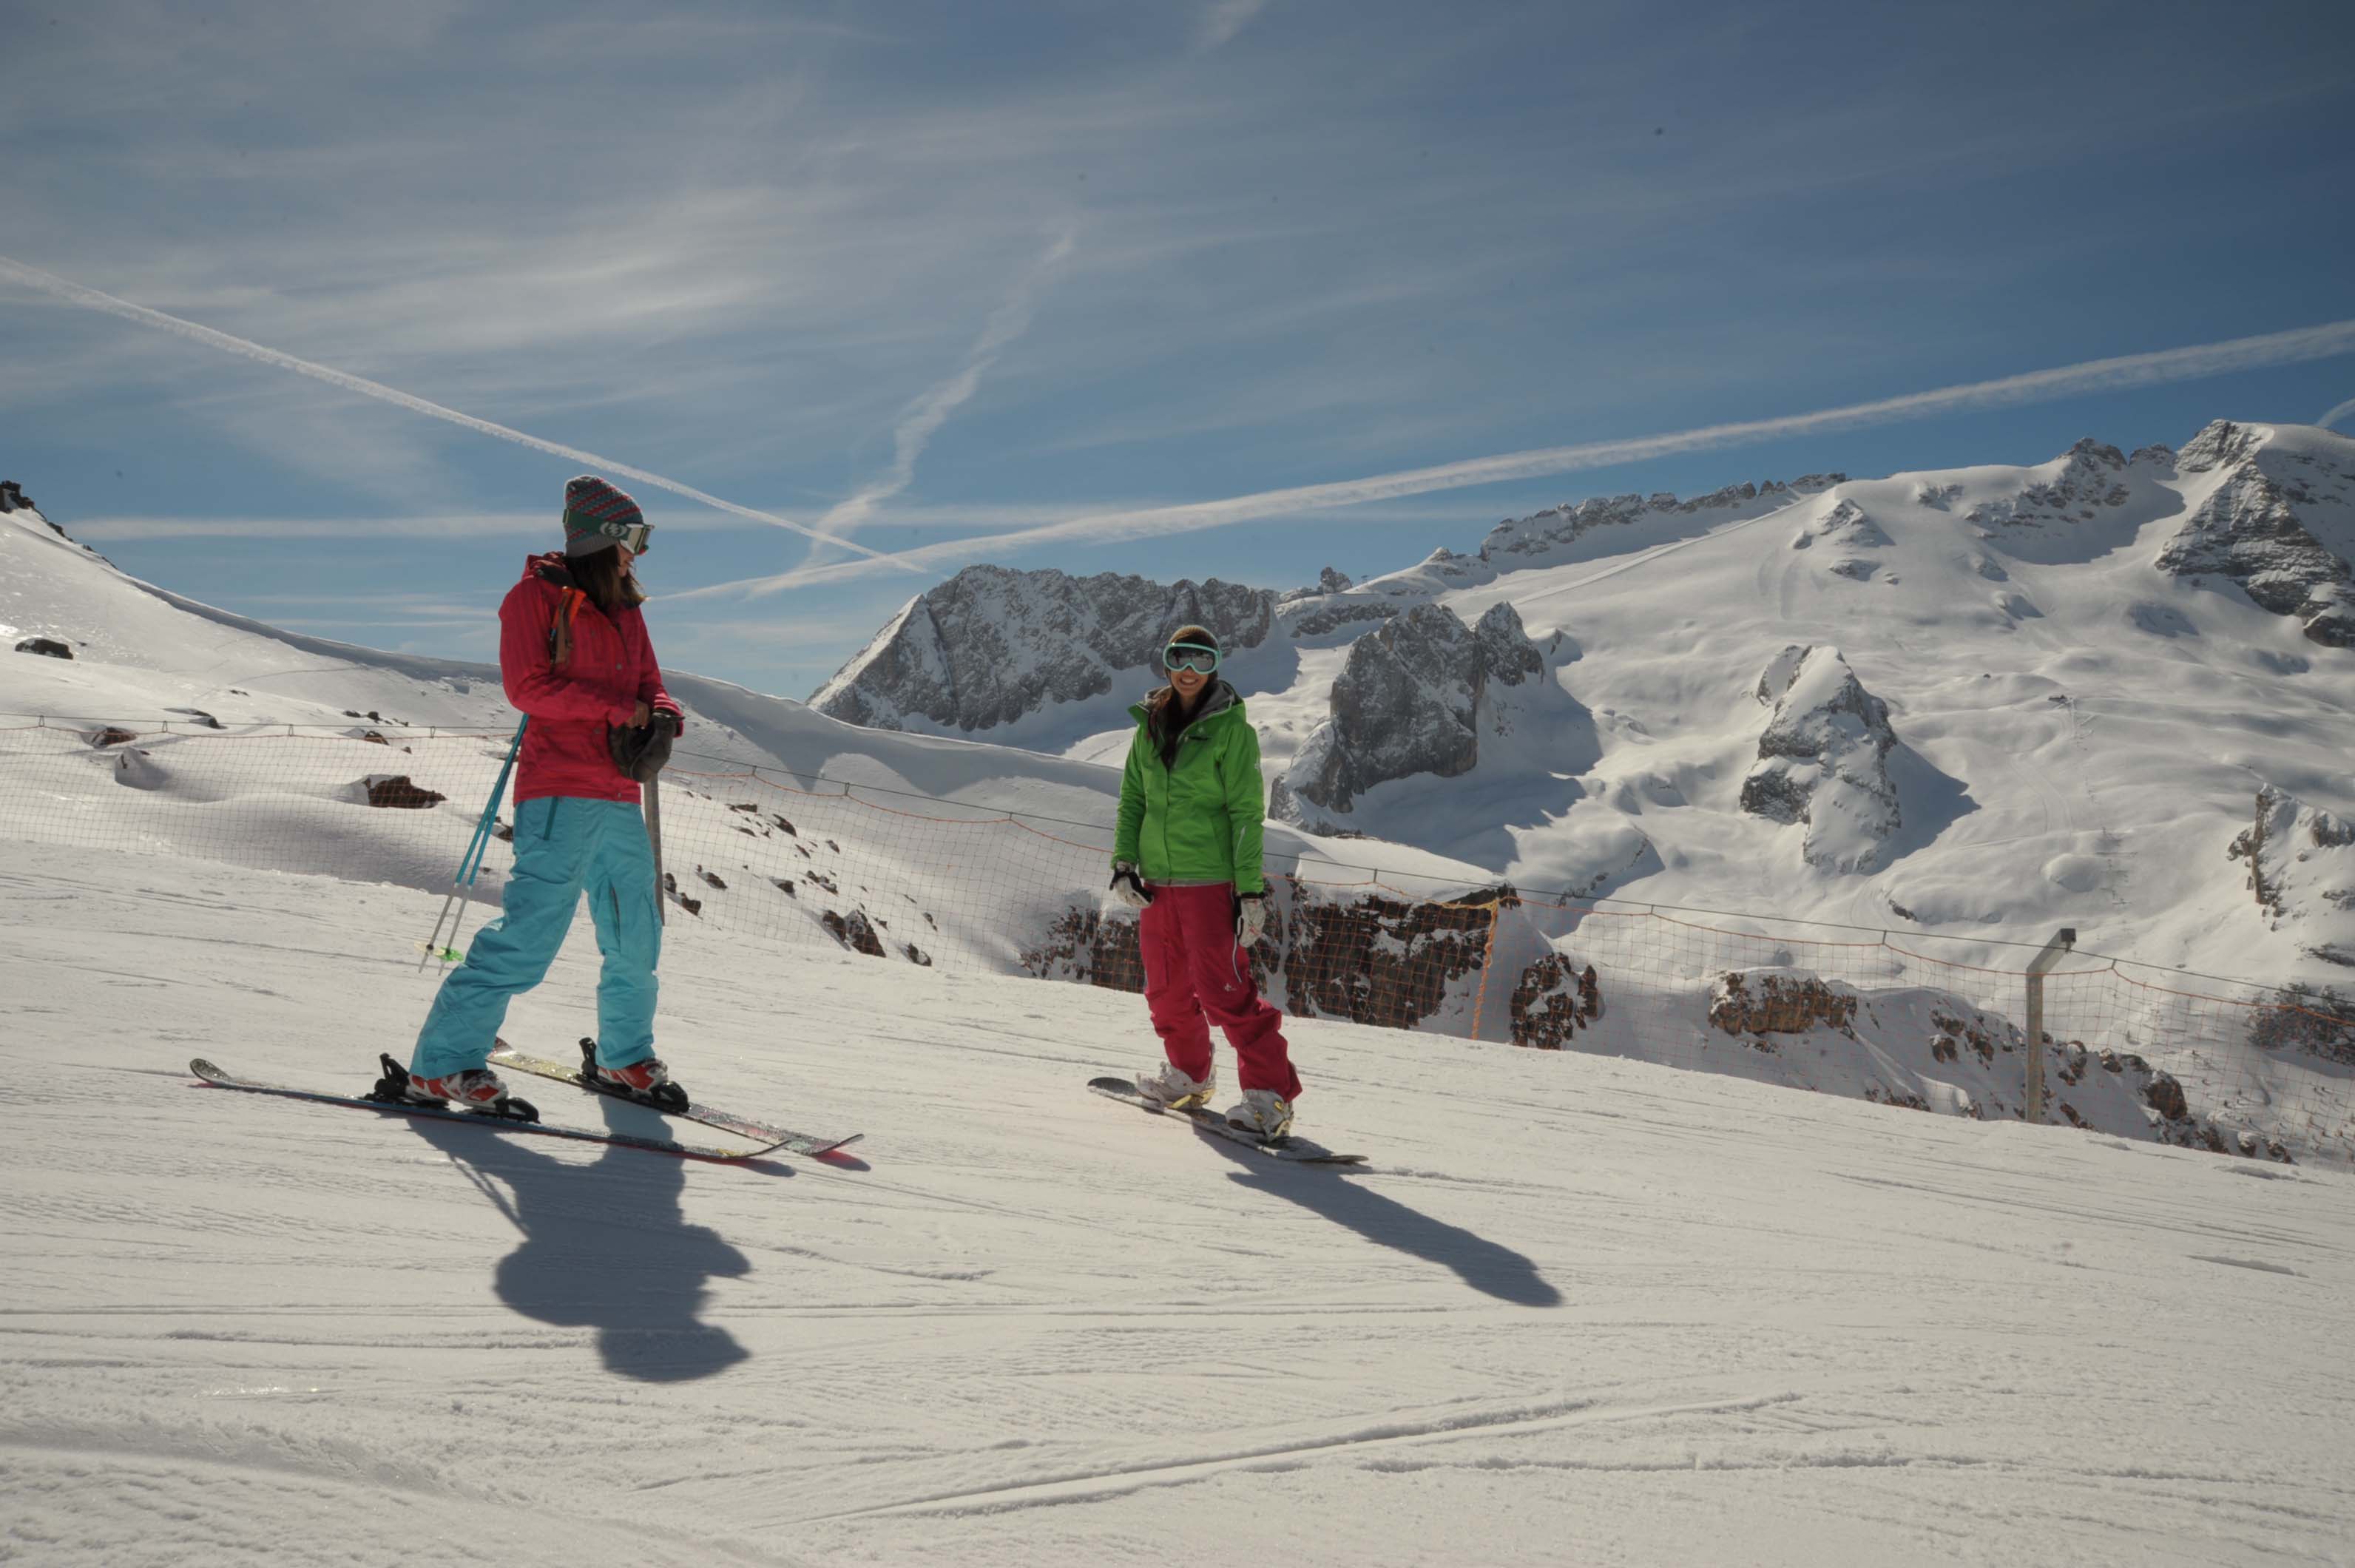 Sabato 20 dicembre aprono nuovi impianti nelle ski aree Civetta, San Pellegrino e Arabba-Marmolada